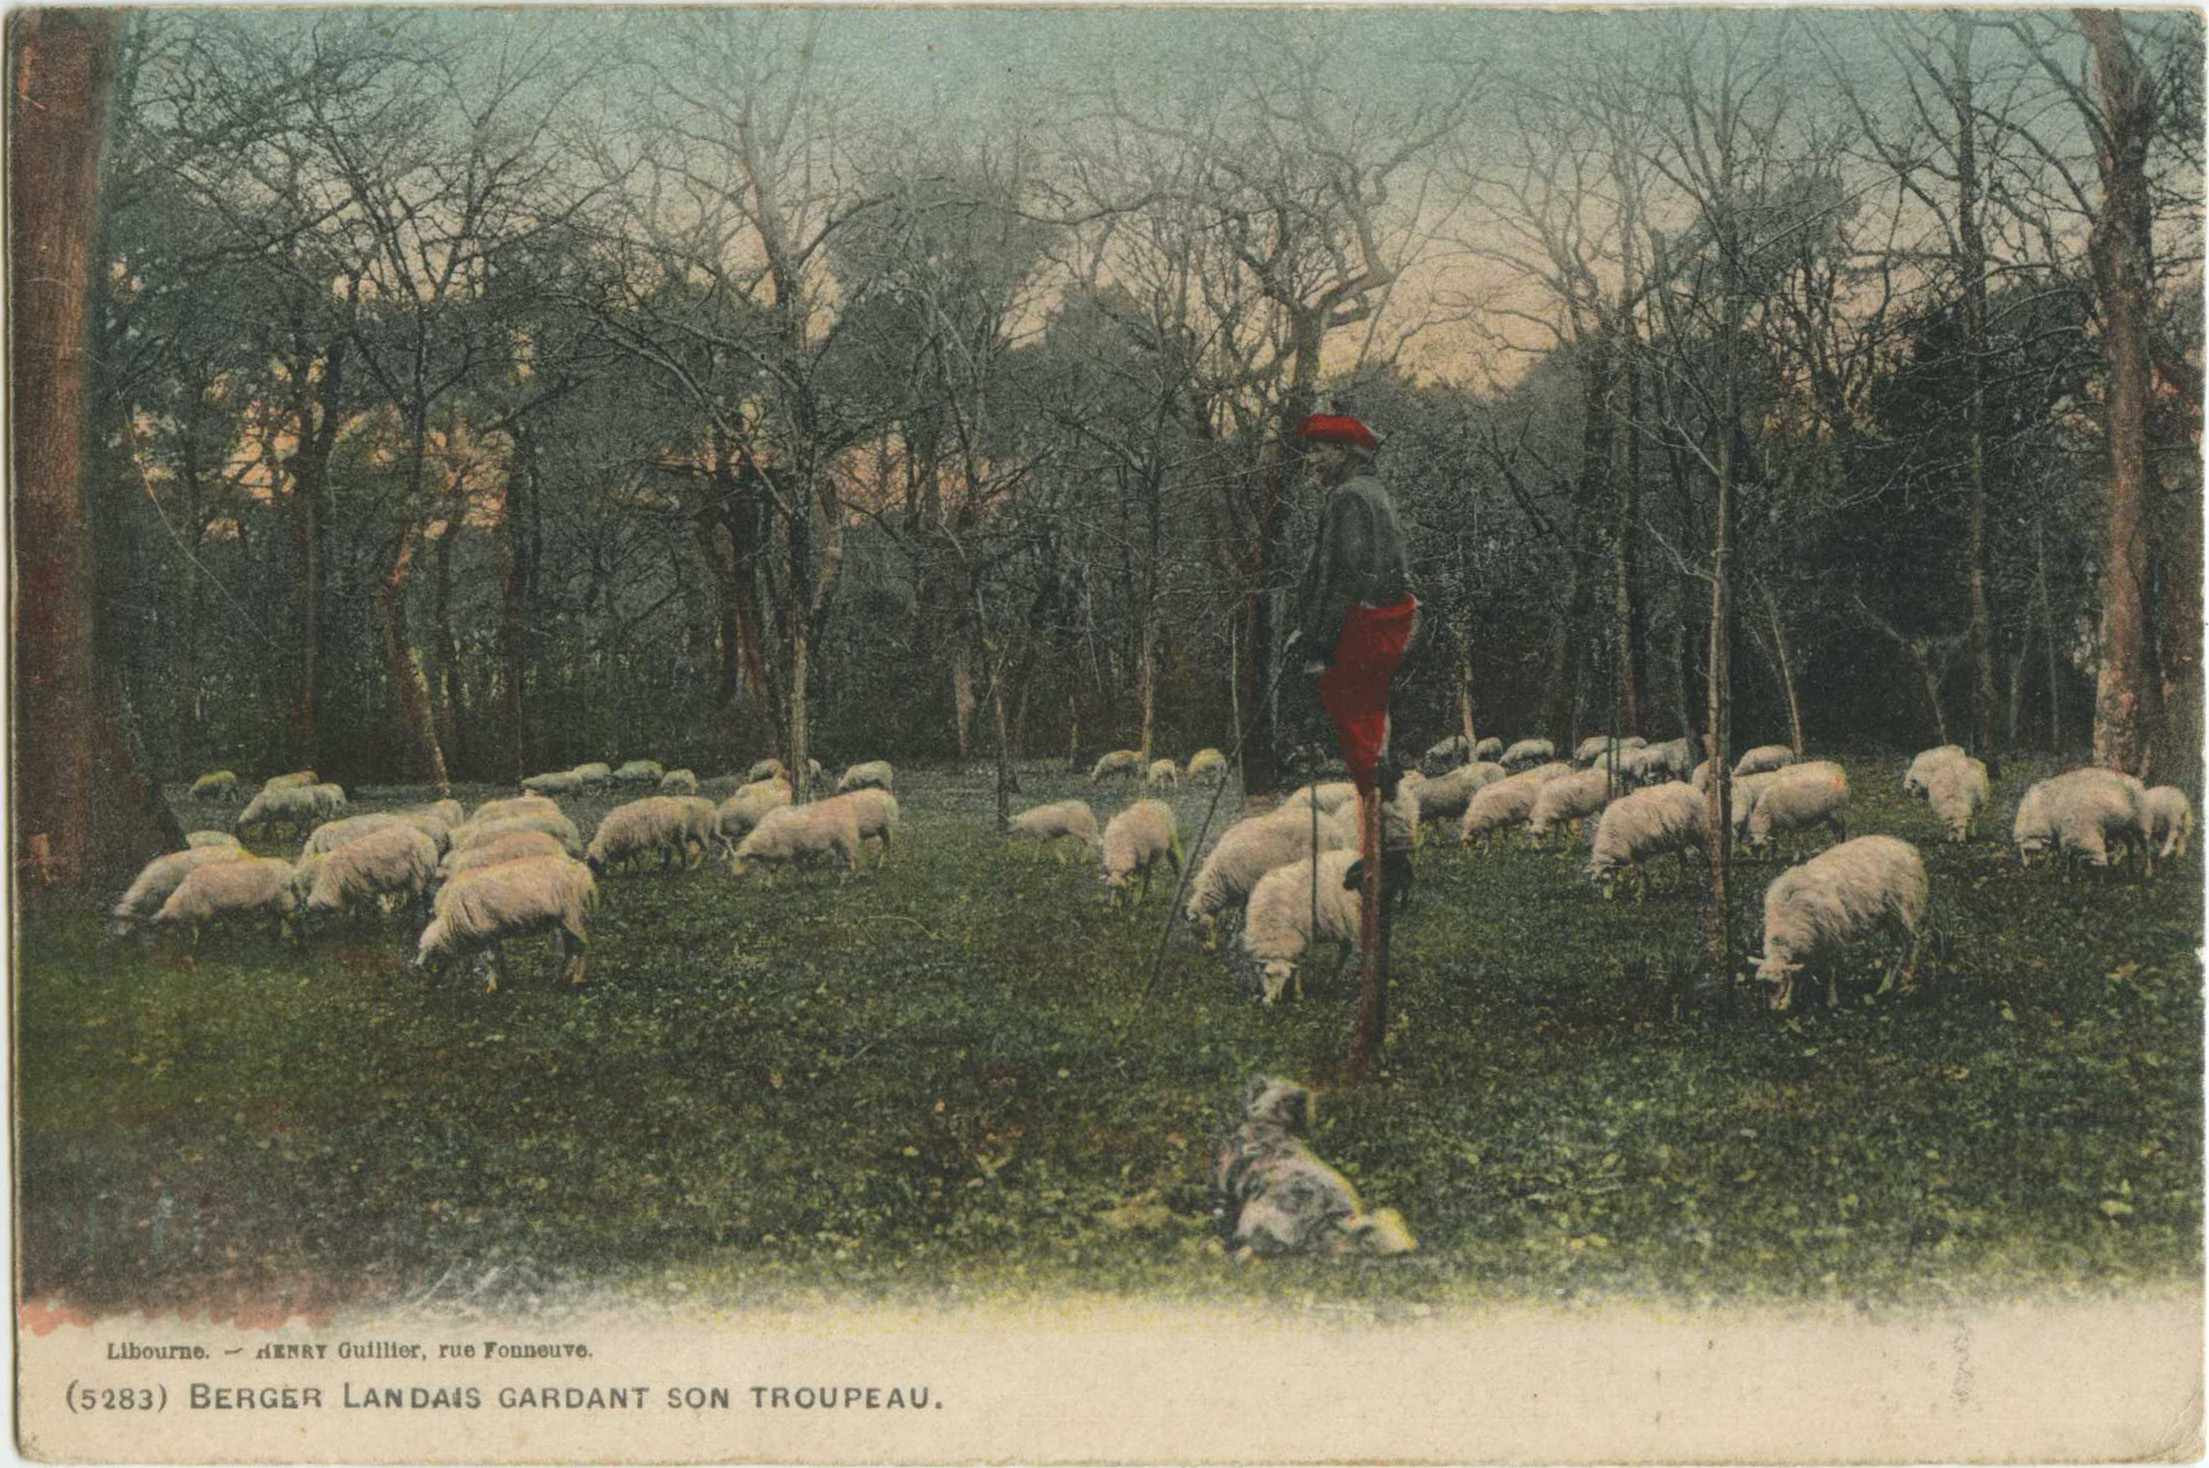 Landes - Berger Landais gardant son troupeau.